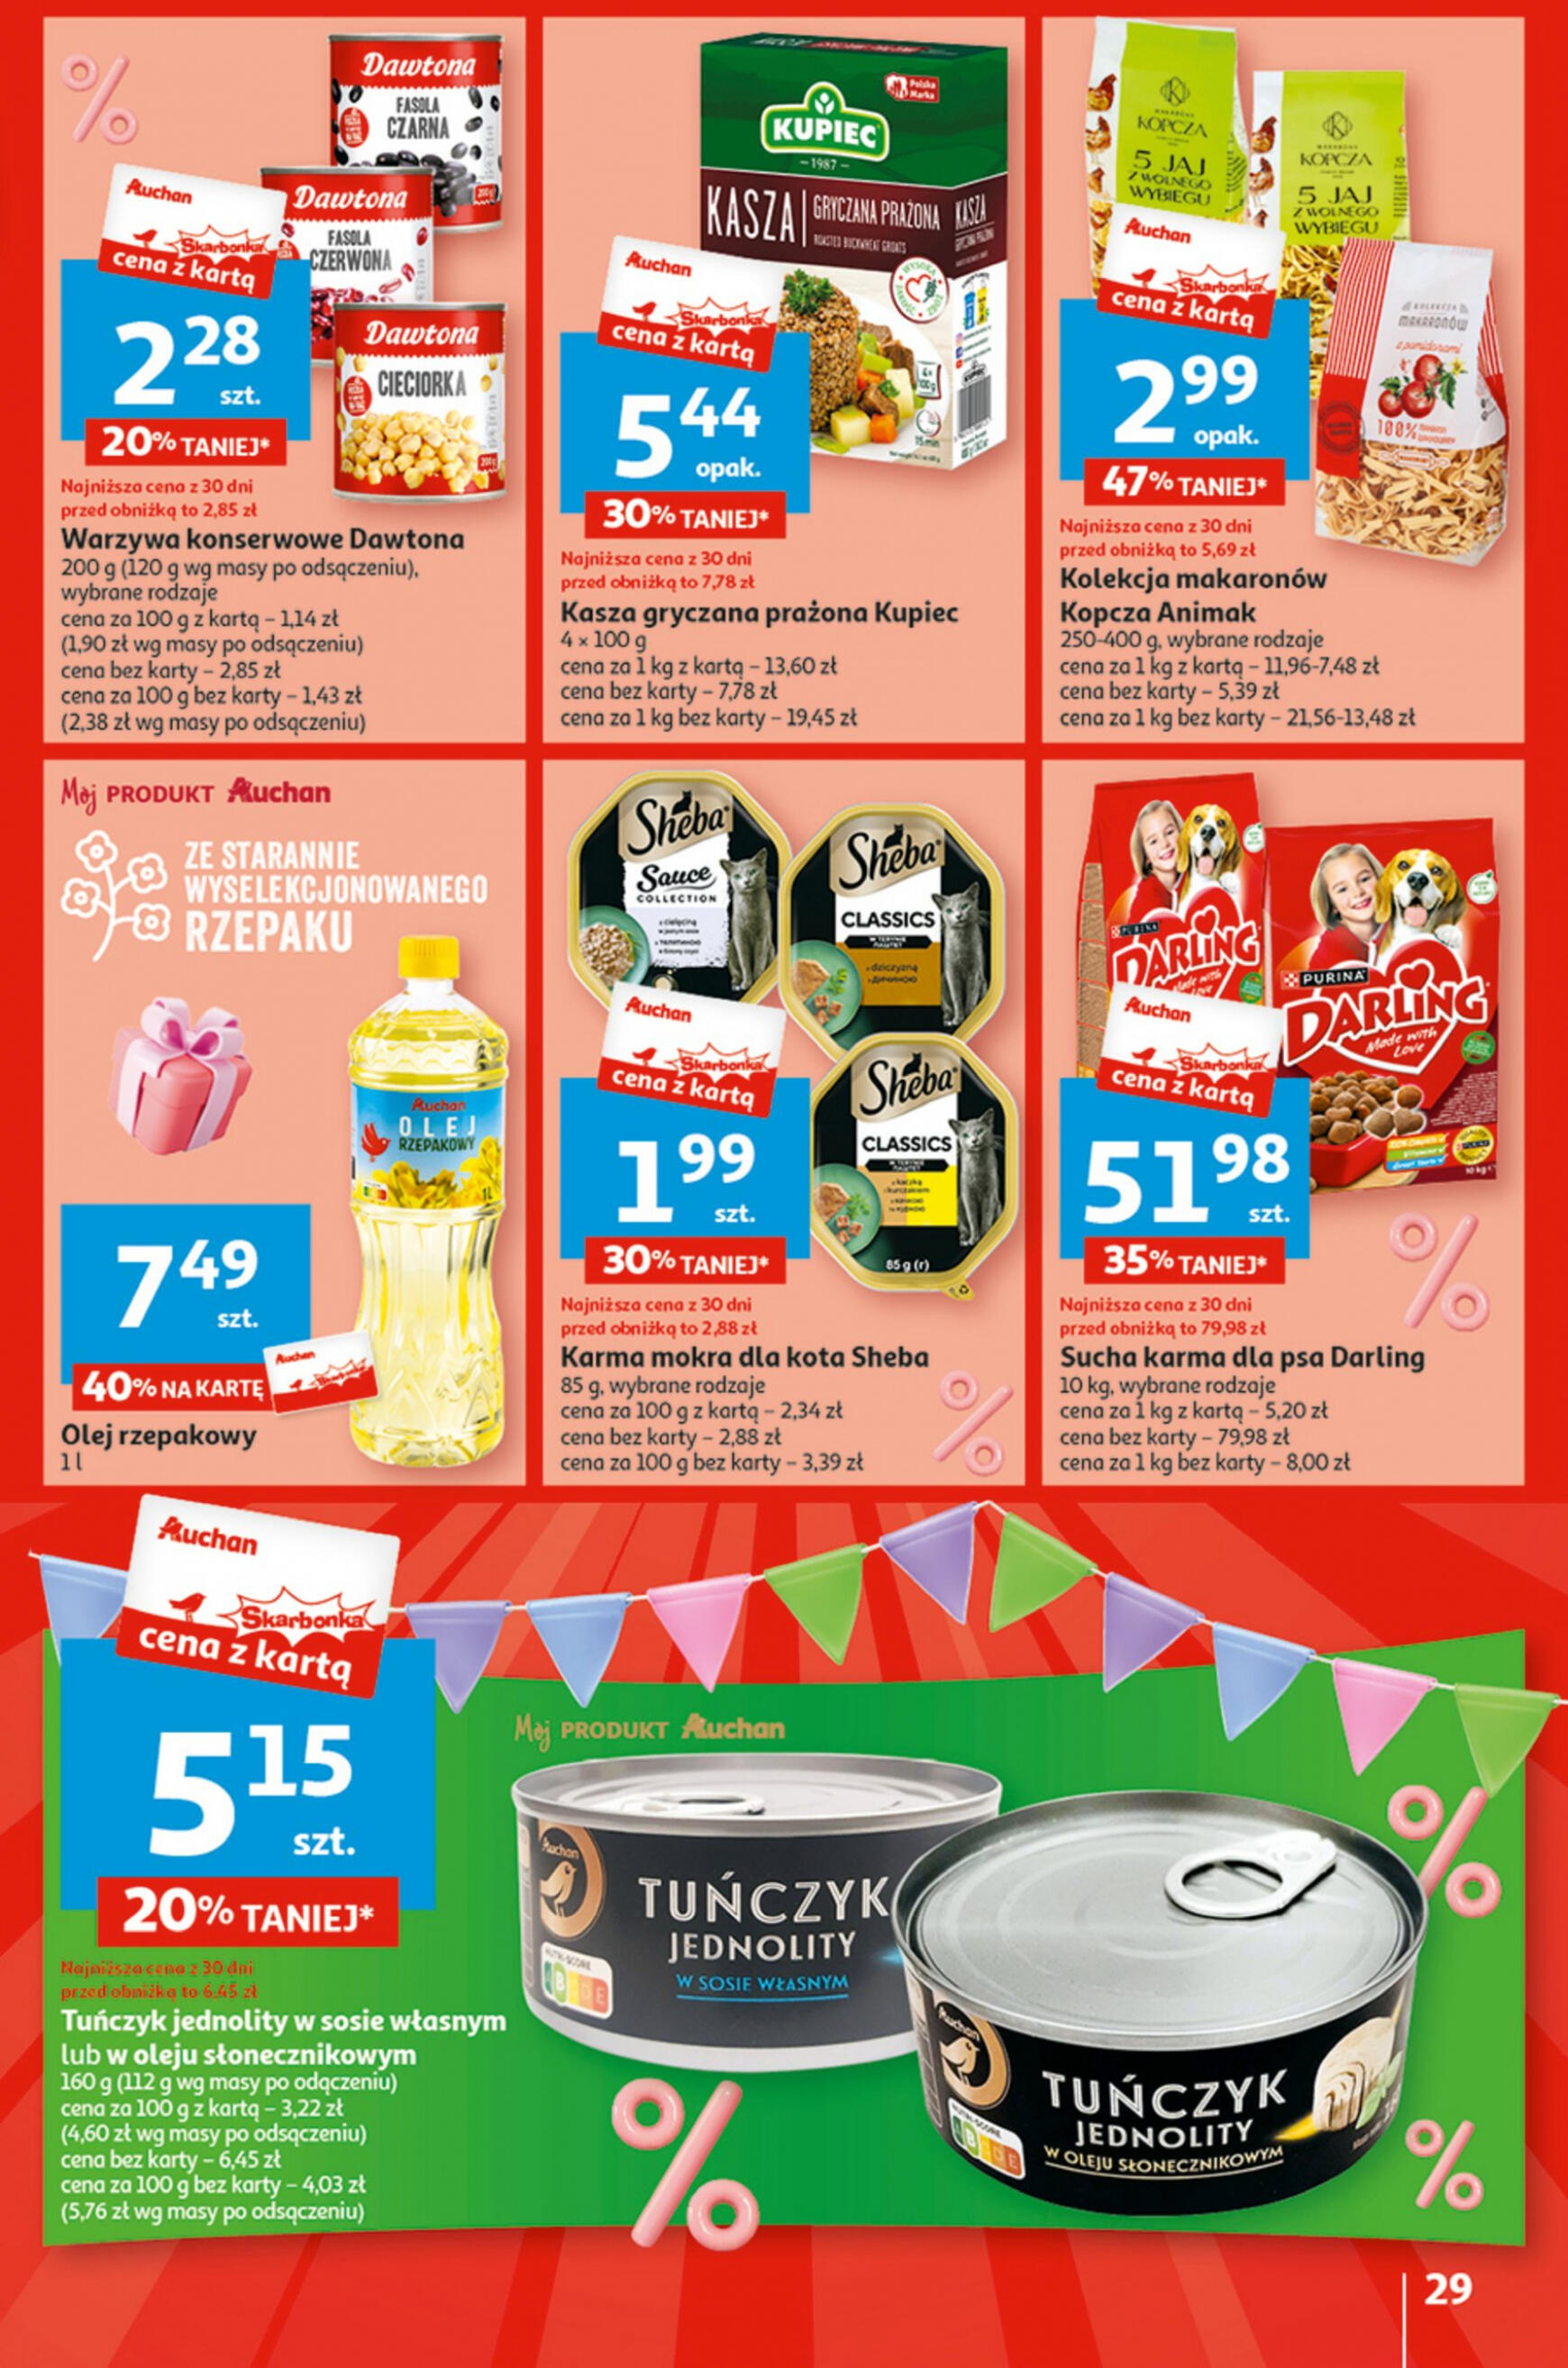 auchan - Hipermarket Auchan - Gazetka Jeszcze taniej na urodziny gazetka aktualna ważna od 02.05. - 08.05. - page: 29